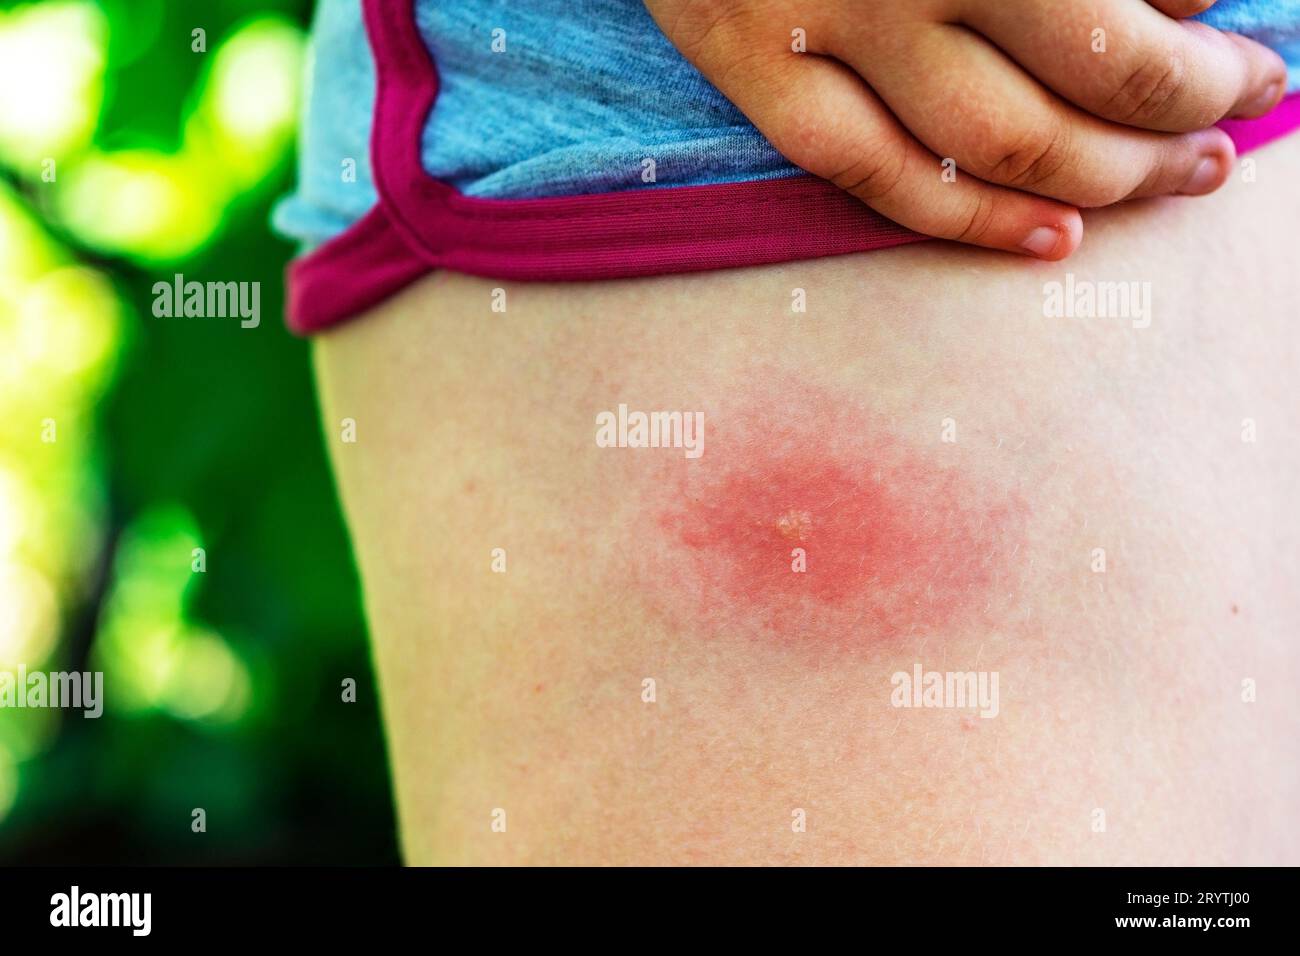 La piqûre de tique sur la jambe, gros plan. Allergie aux piqûres d'insectes. Plaie et conséquences après piqûre de moustique. Peau acnéique. Allergie cutanée Banque D'Images